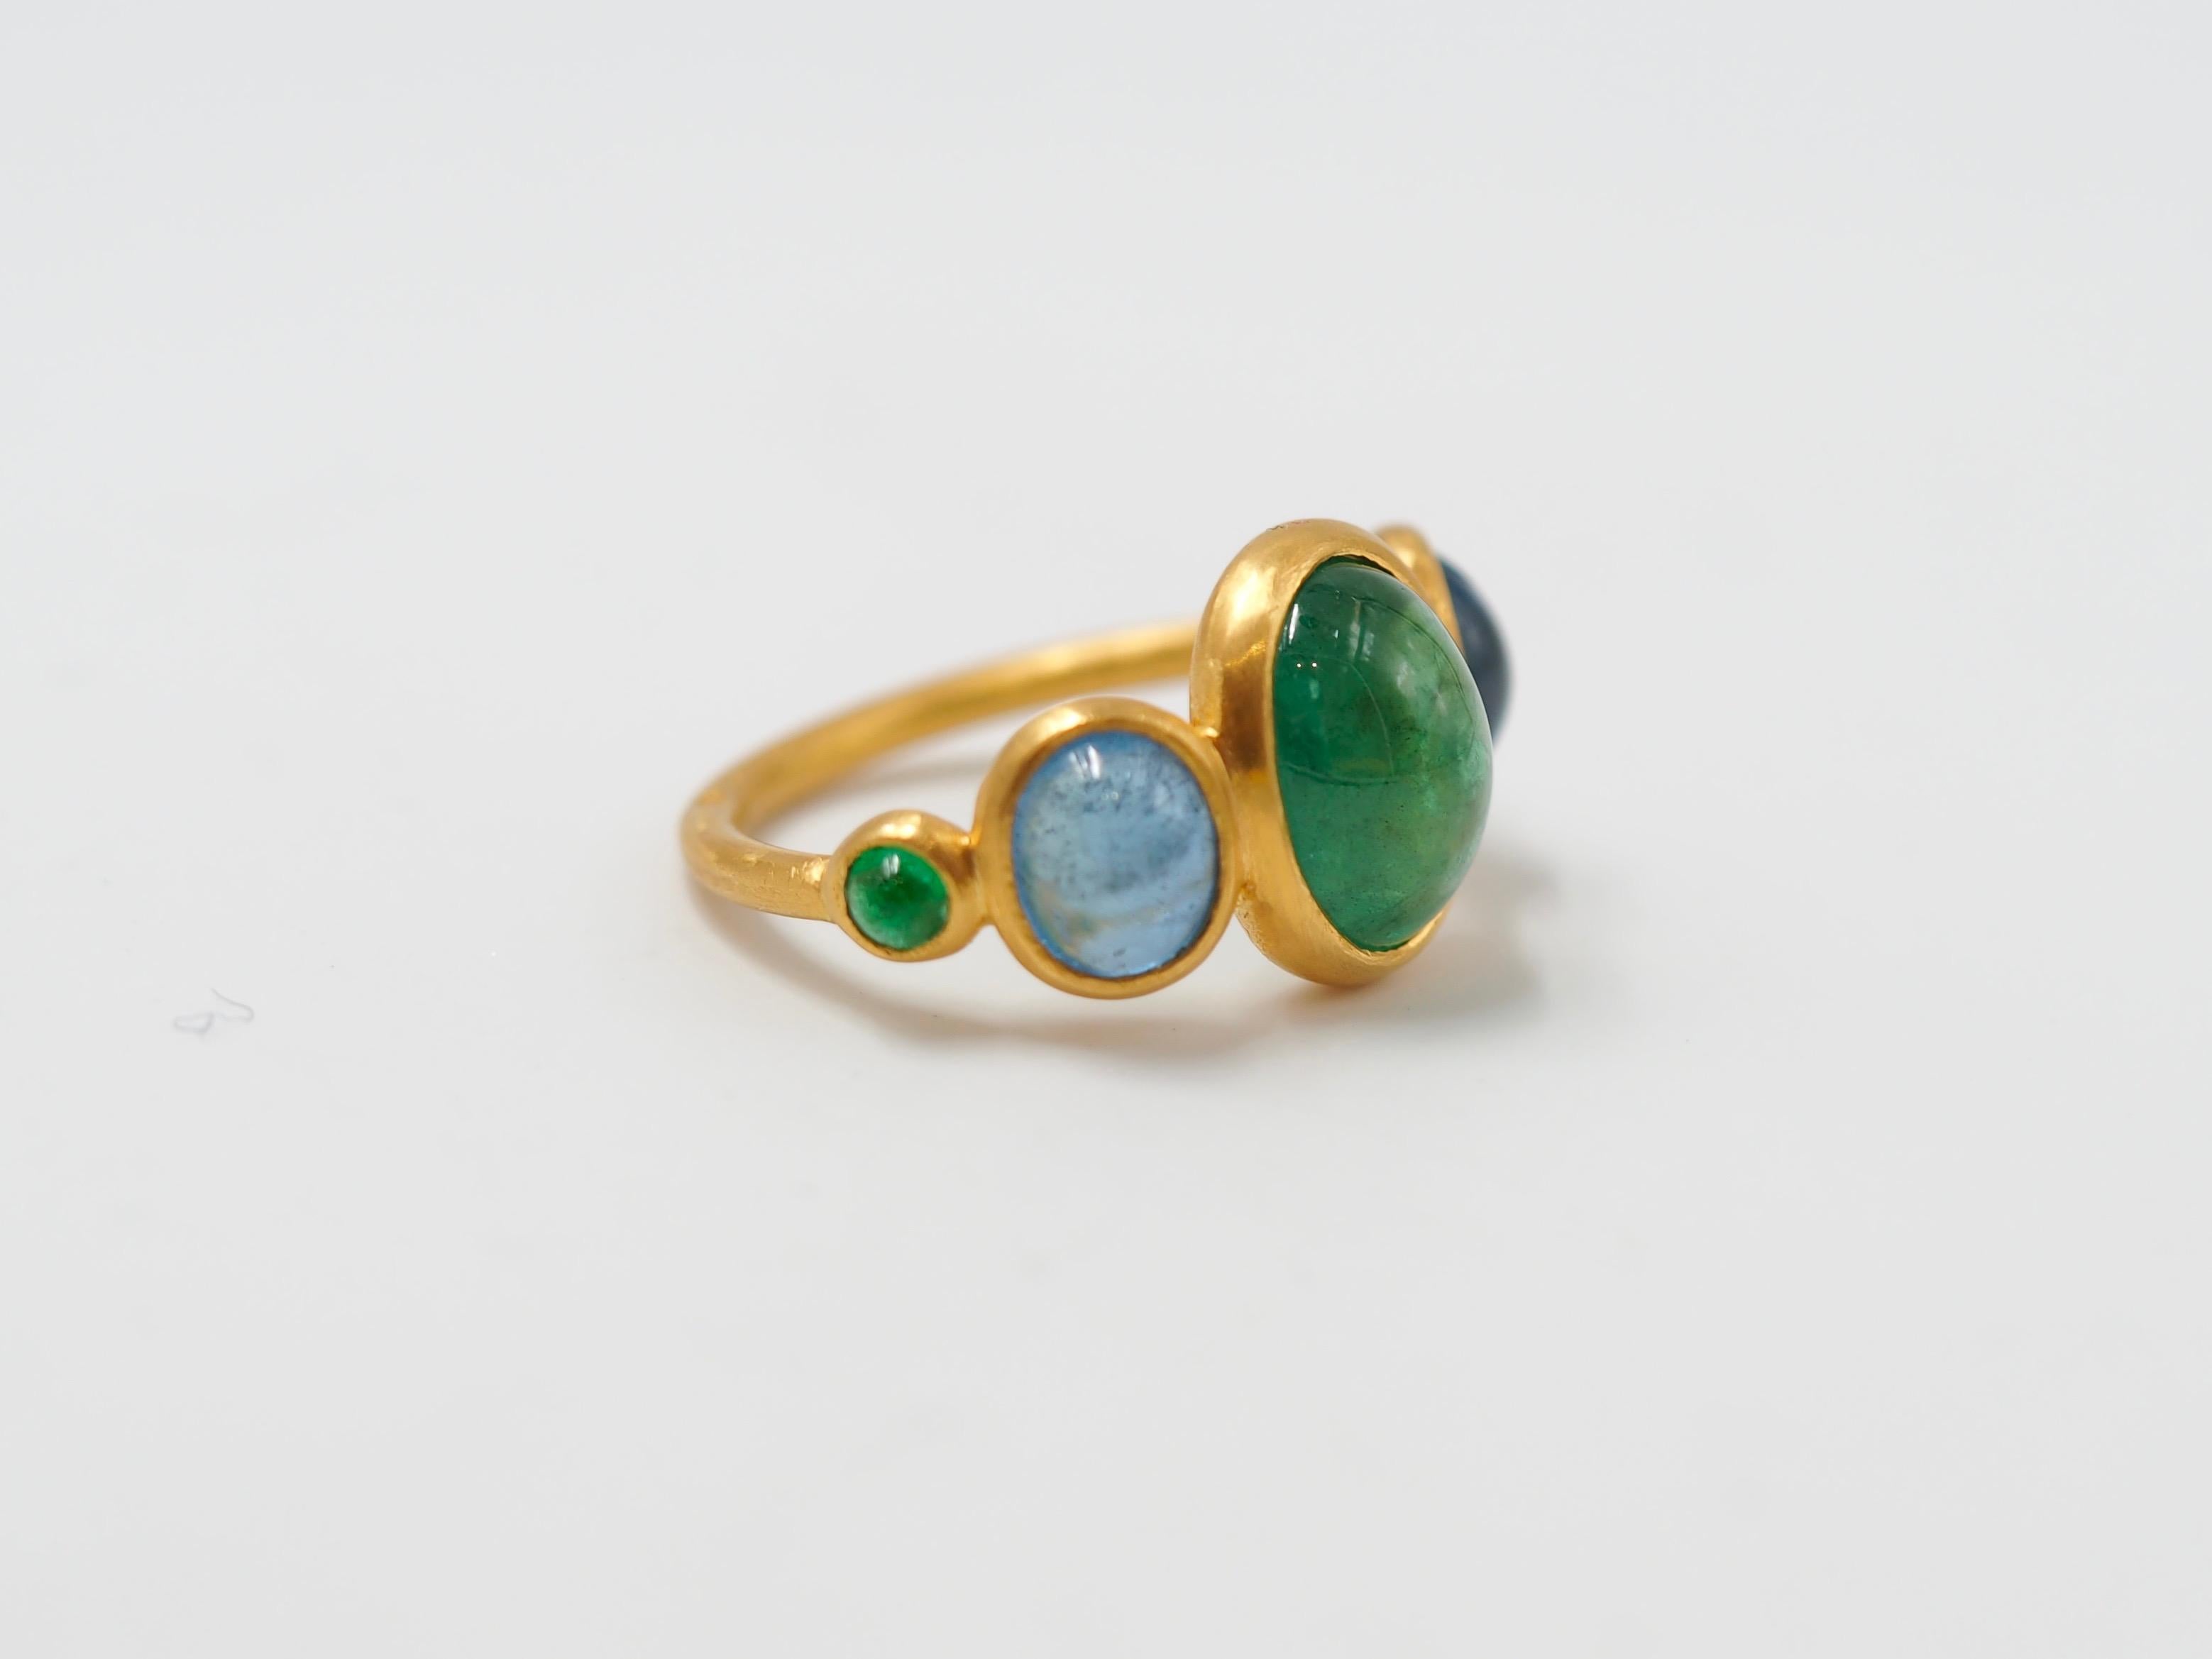 Oval Cut 3.79 Carat Emerald Aquamarine Cabochons 22 Karat Gold Ring